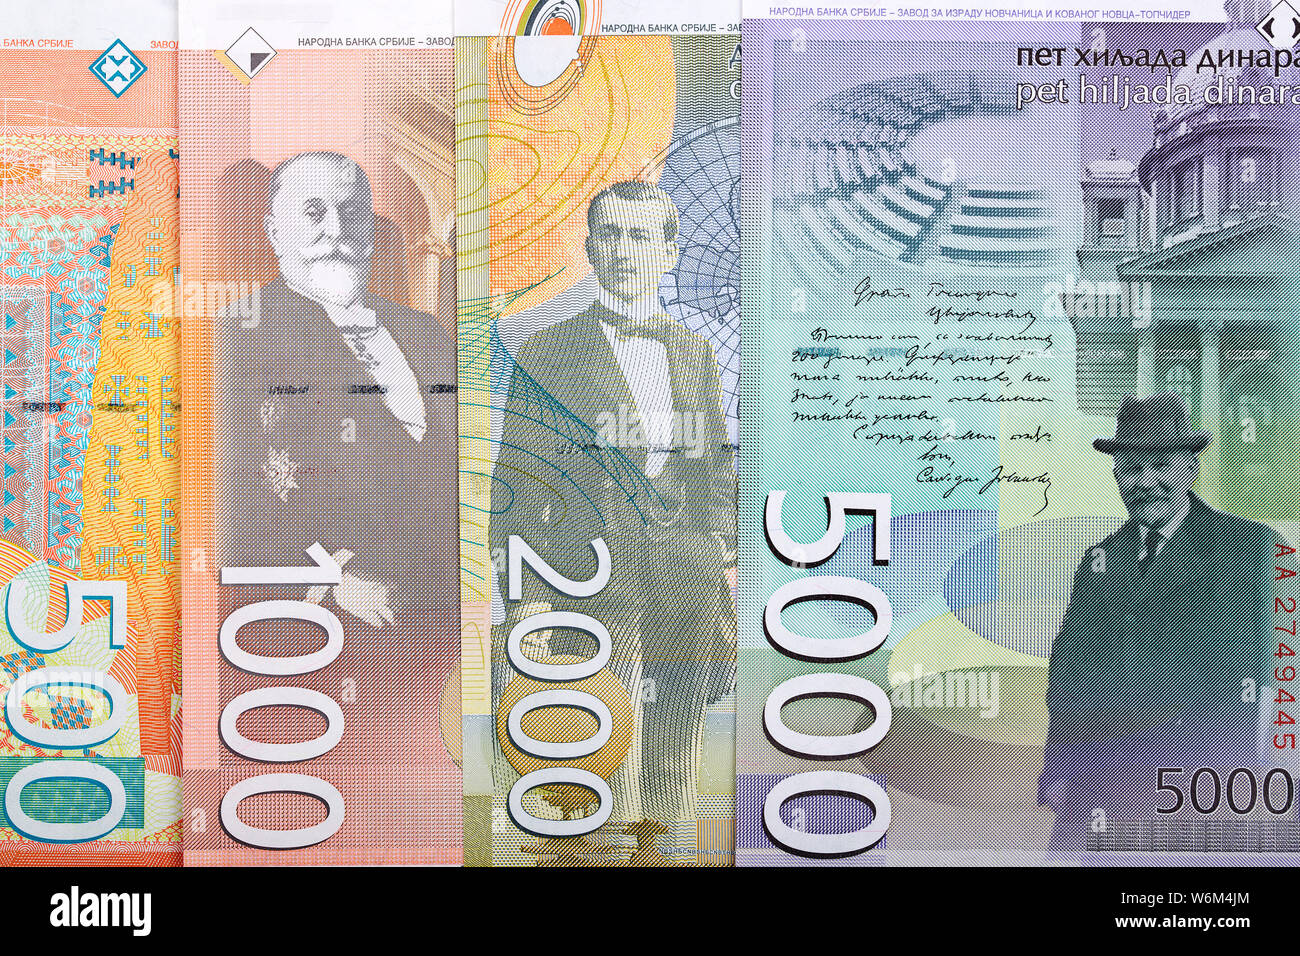 Lot mix od Serbian banknotes 10 dinars 20 dinars 50 dinars 100 dinars 200 dinars